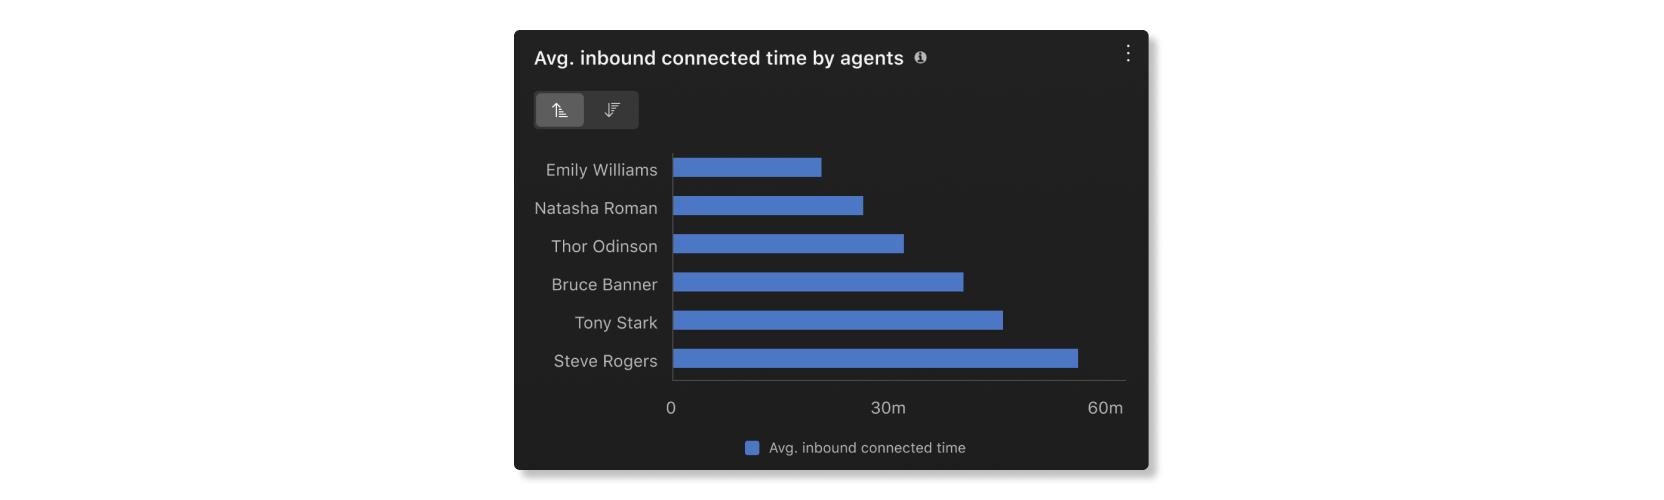 Tempo medio di connessione in entrata da parte del grafico agenti nelle statistiche agenti dell'analisi Elementi essenziali del cliente